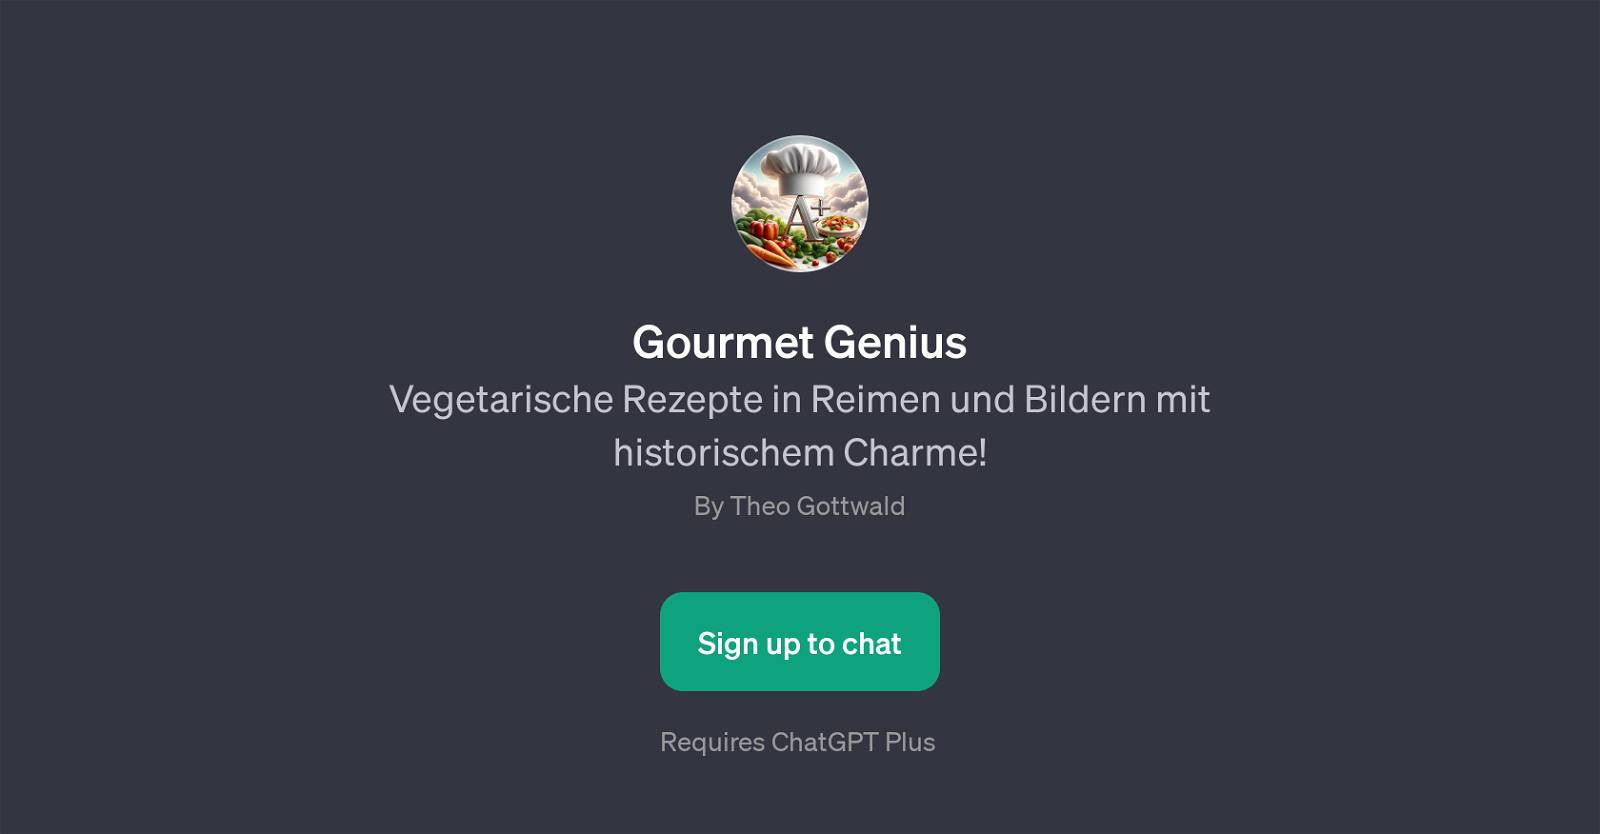 Gourmet Genius website